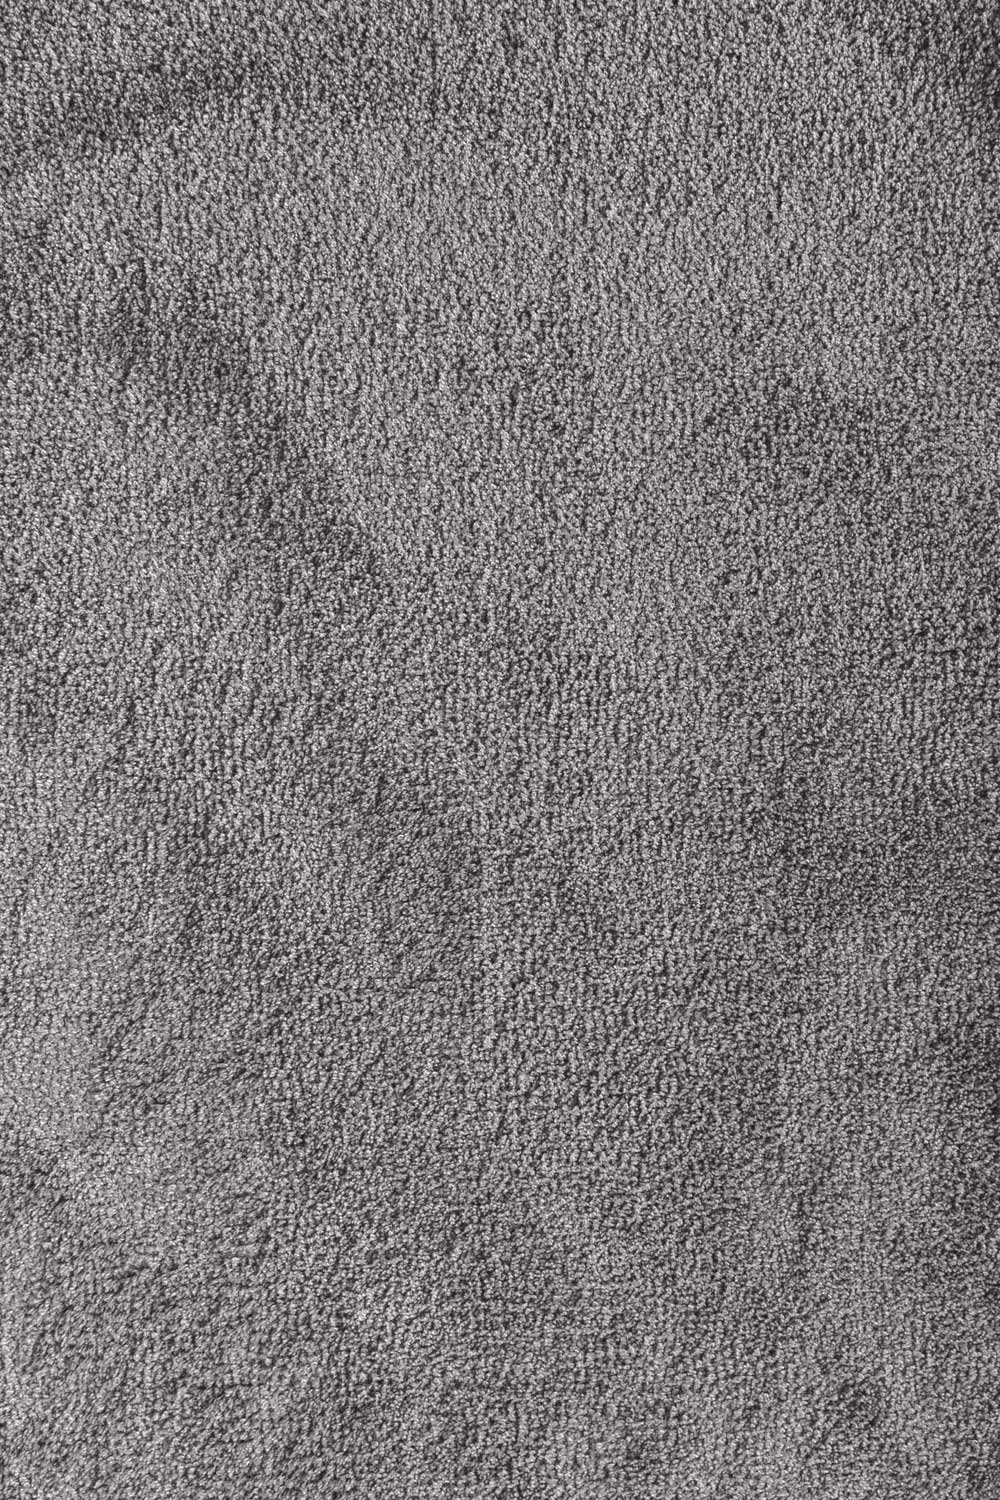 Metrážny koberec VERMONT 274 400 cm